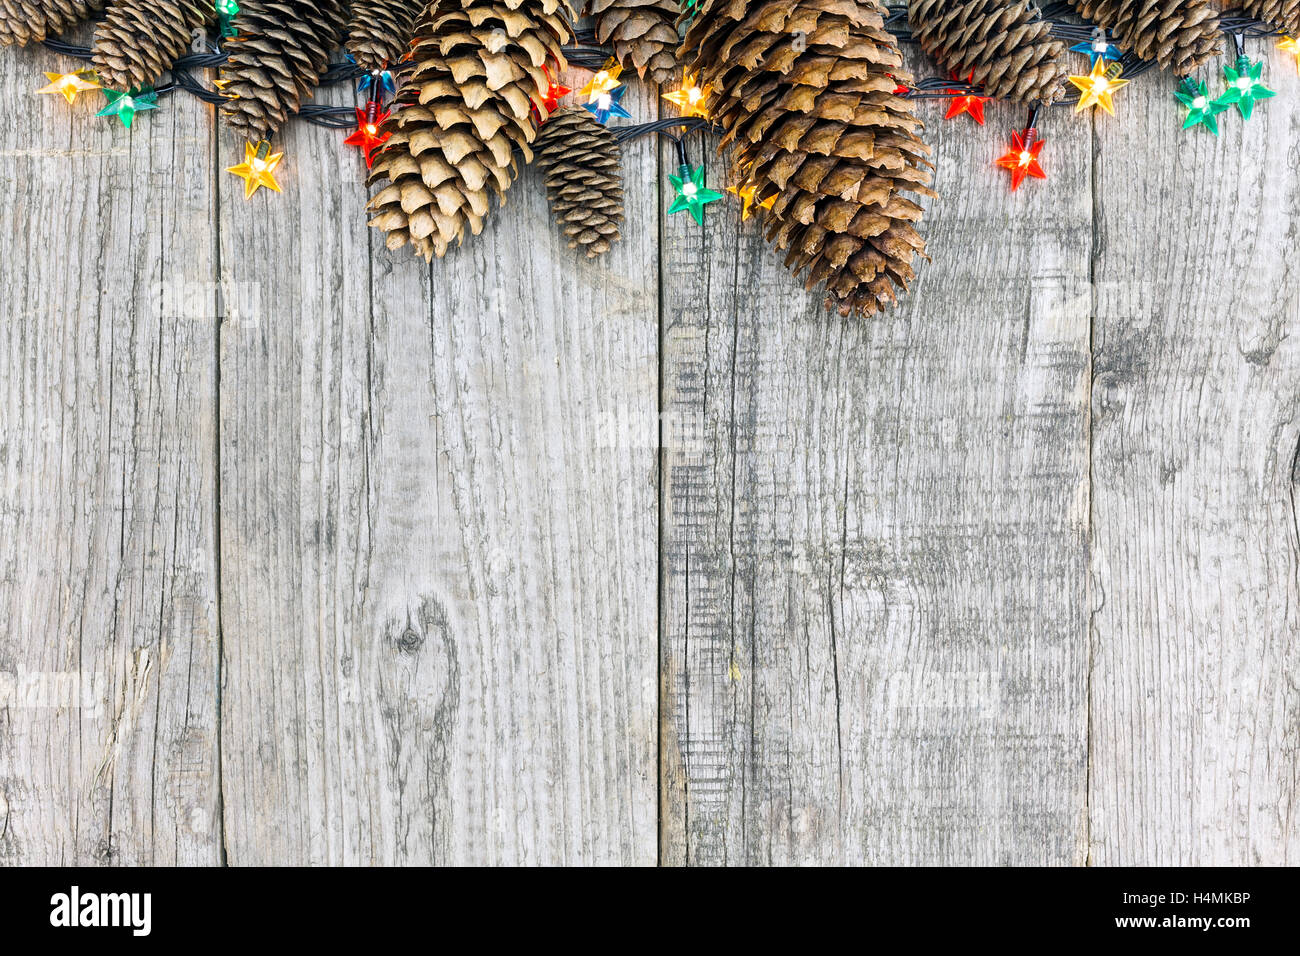 Décoration de Noël avec des pommes de pins et de lumières sur fond de bois naturel Banque D'Images